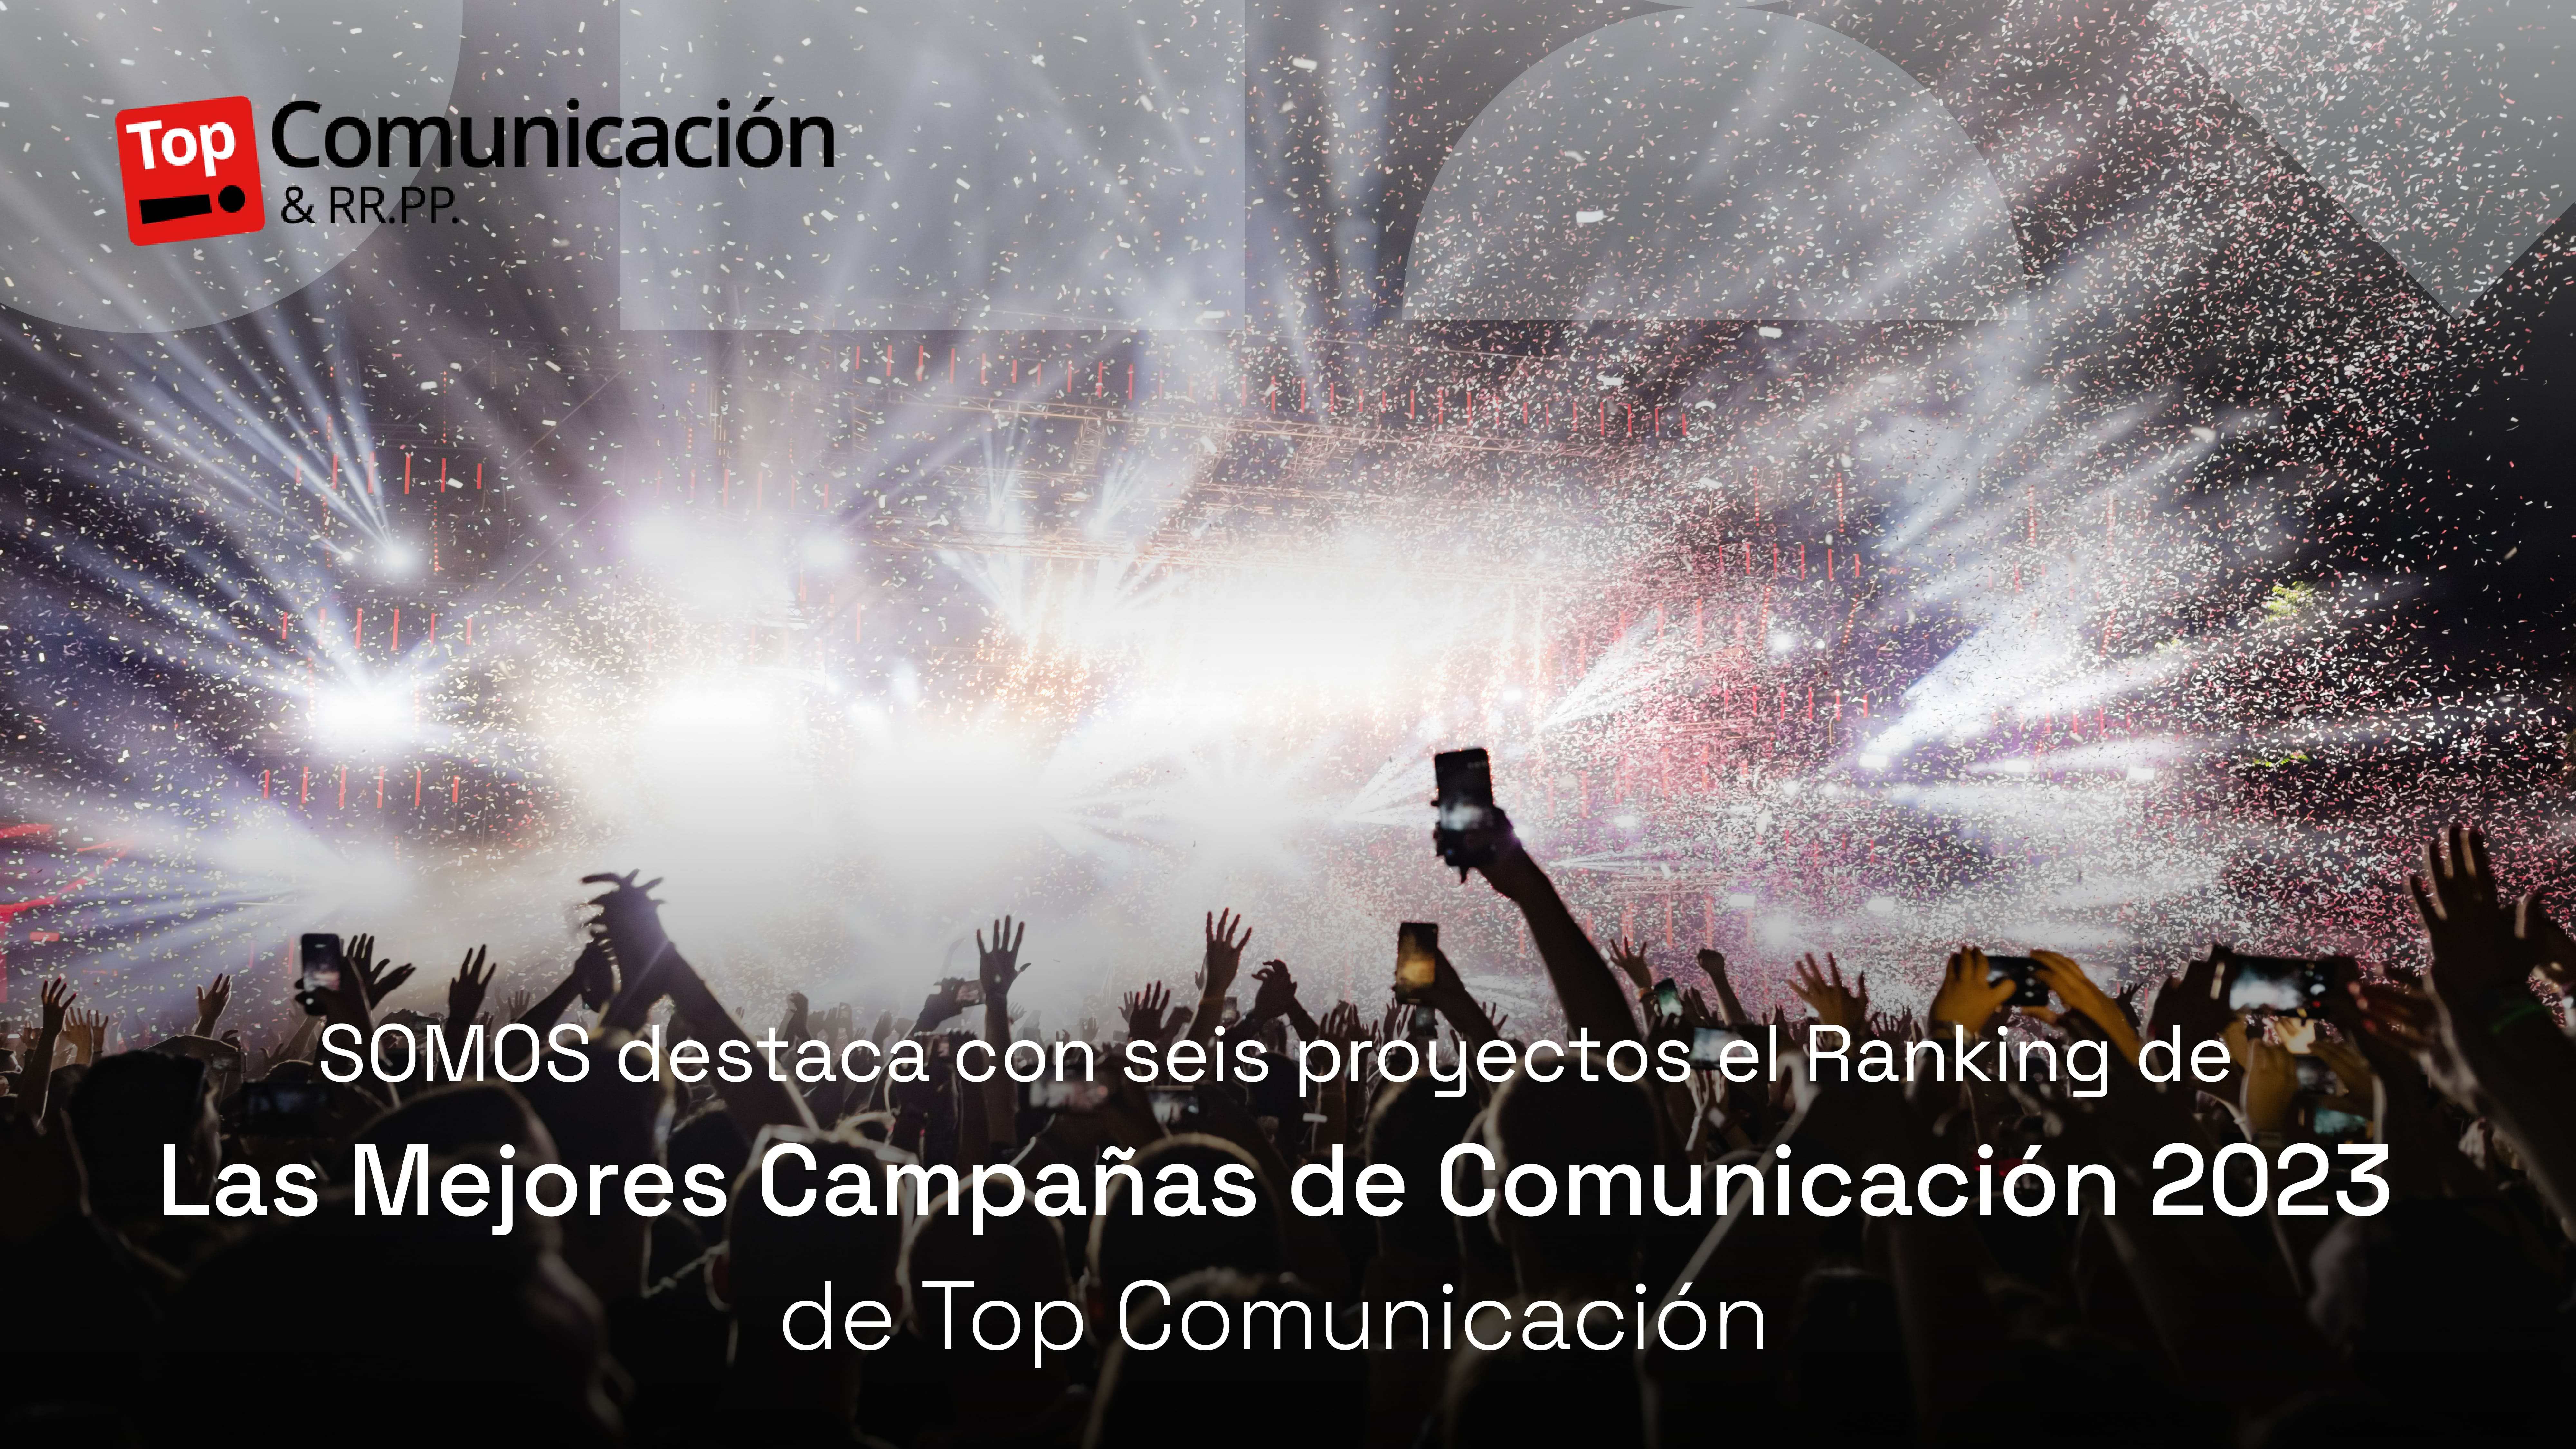 SOMOS destaca con seis proyectos en el Ranking de Las Mejores Campañas de Comunicación 2023 de Top Comunicación